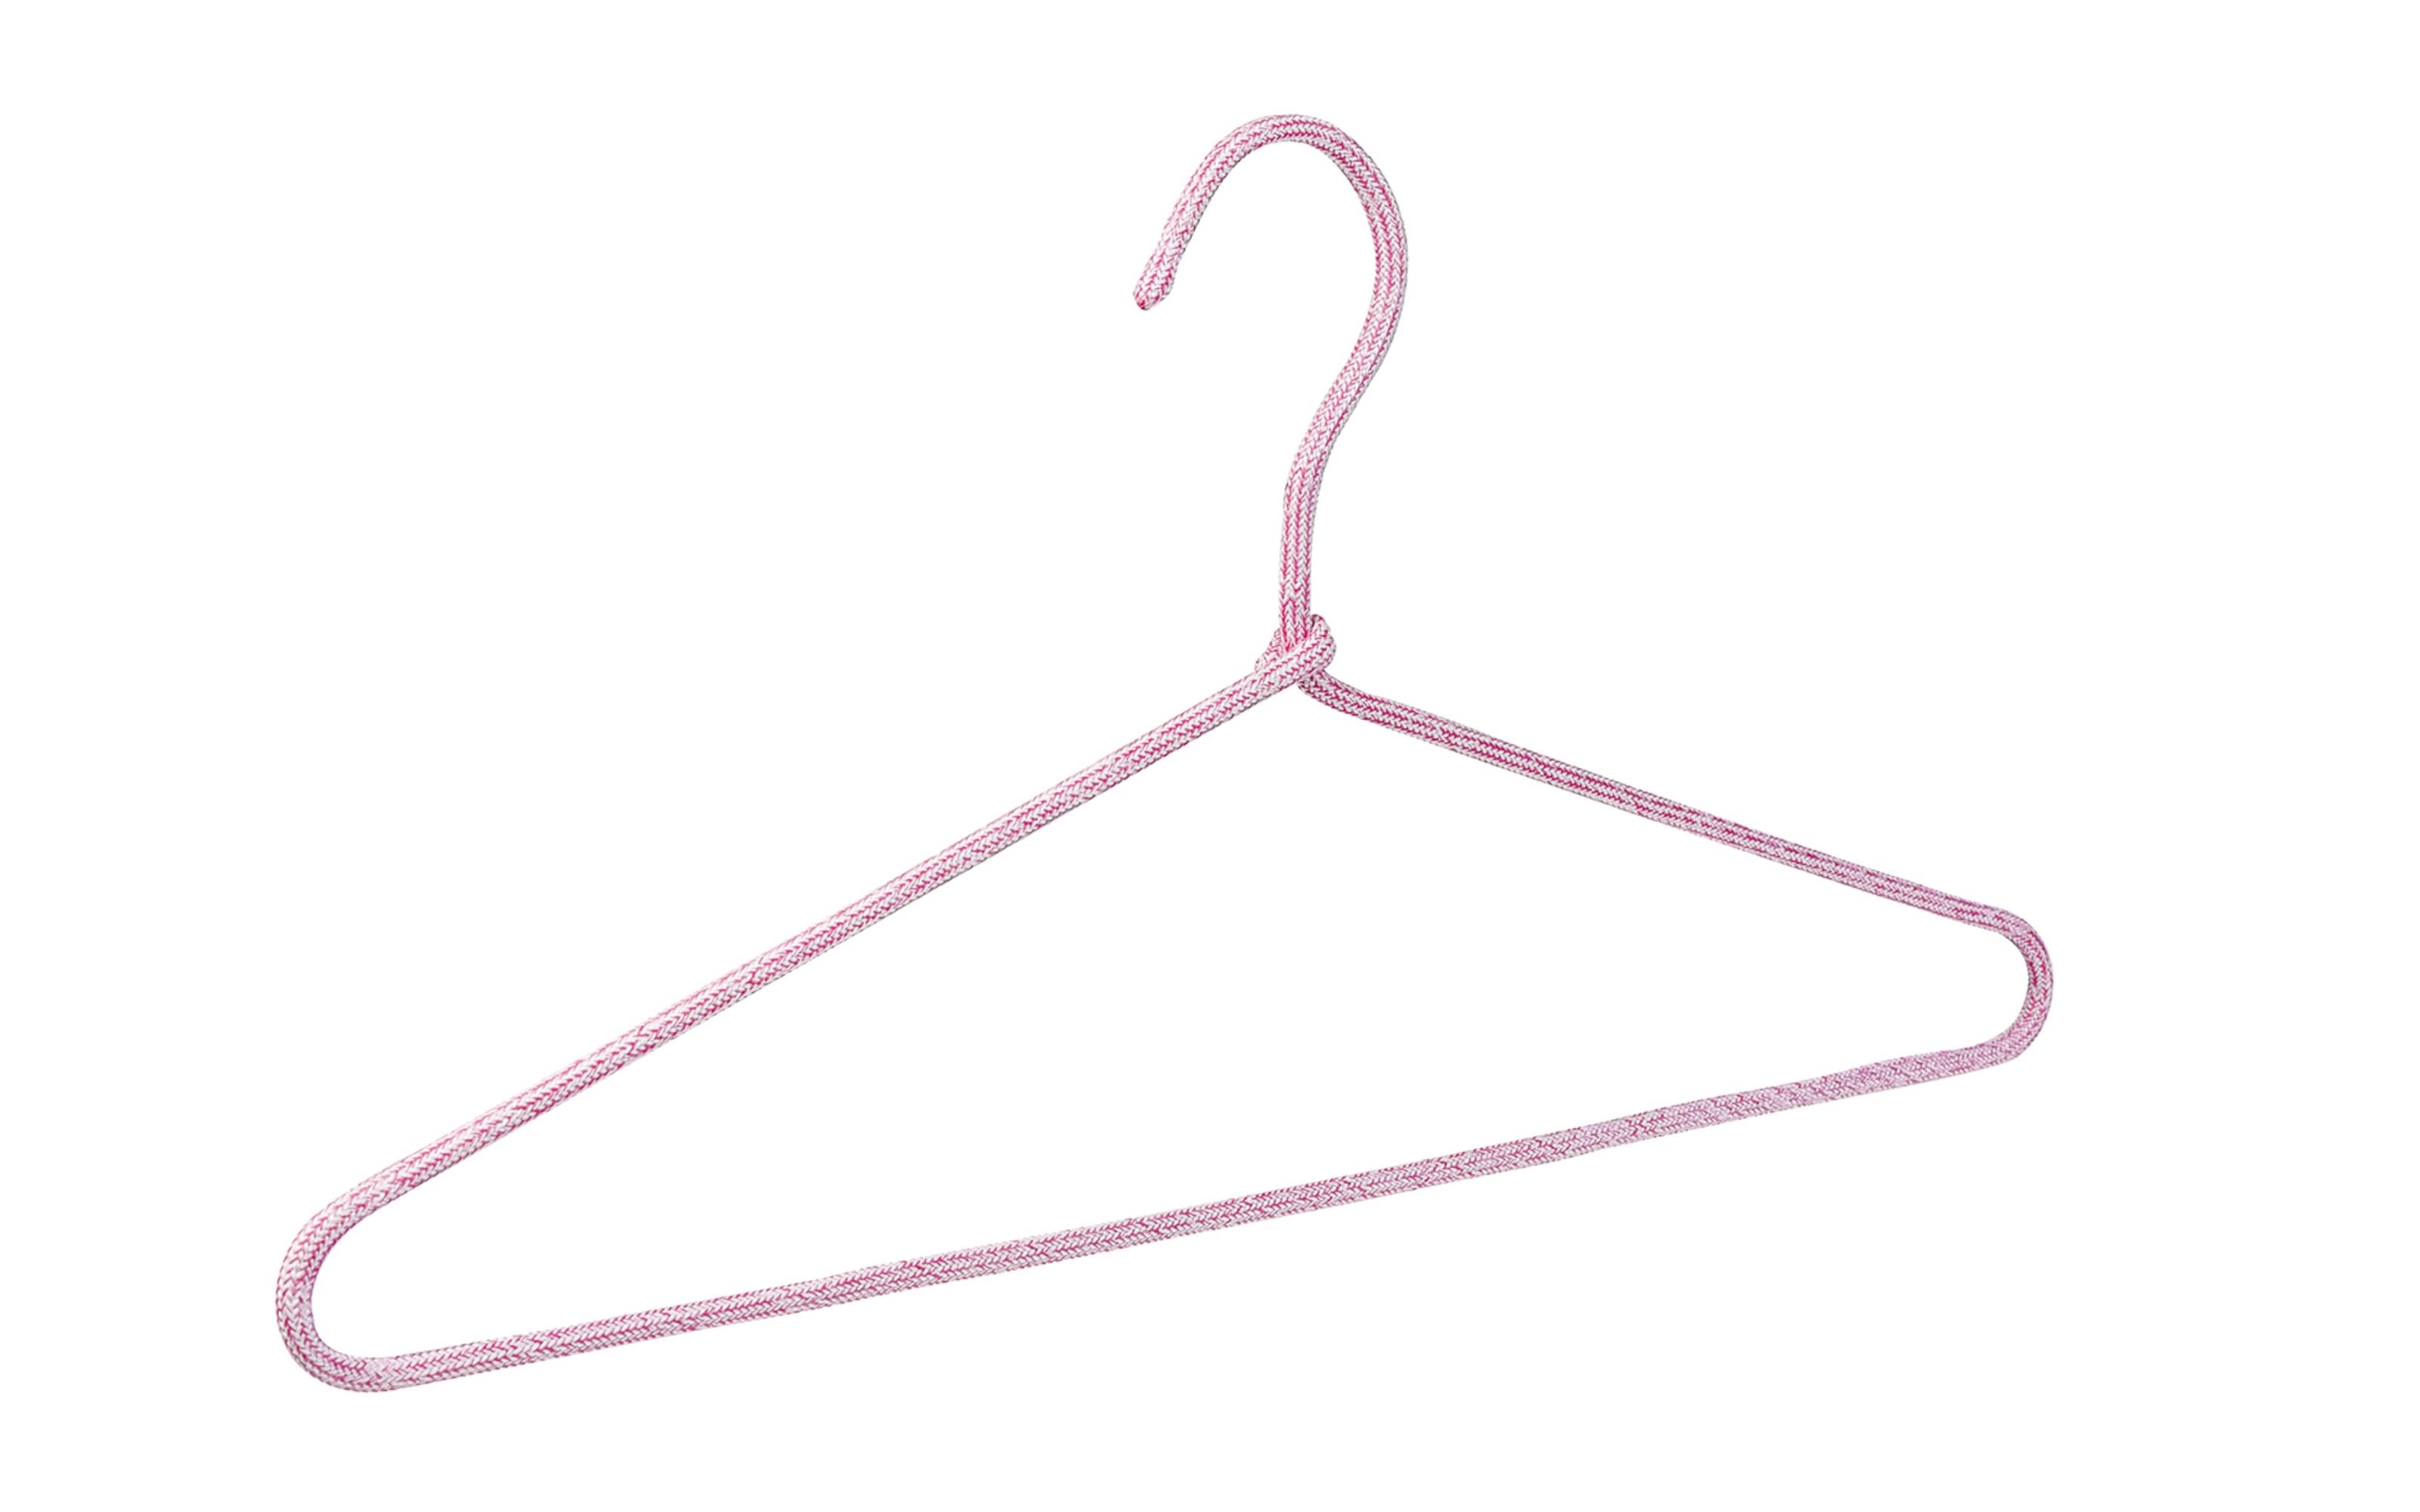 Garderobenbügel Turin, rosa